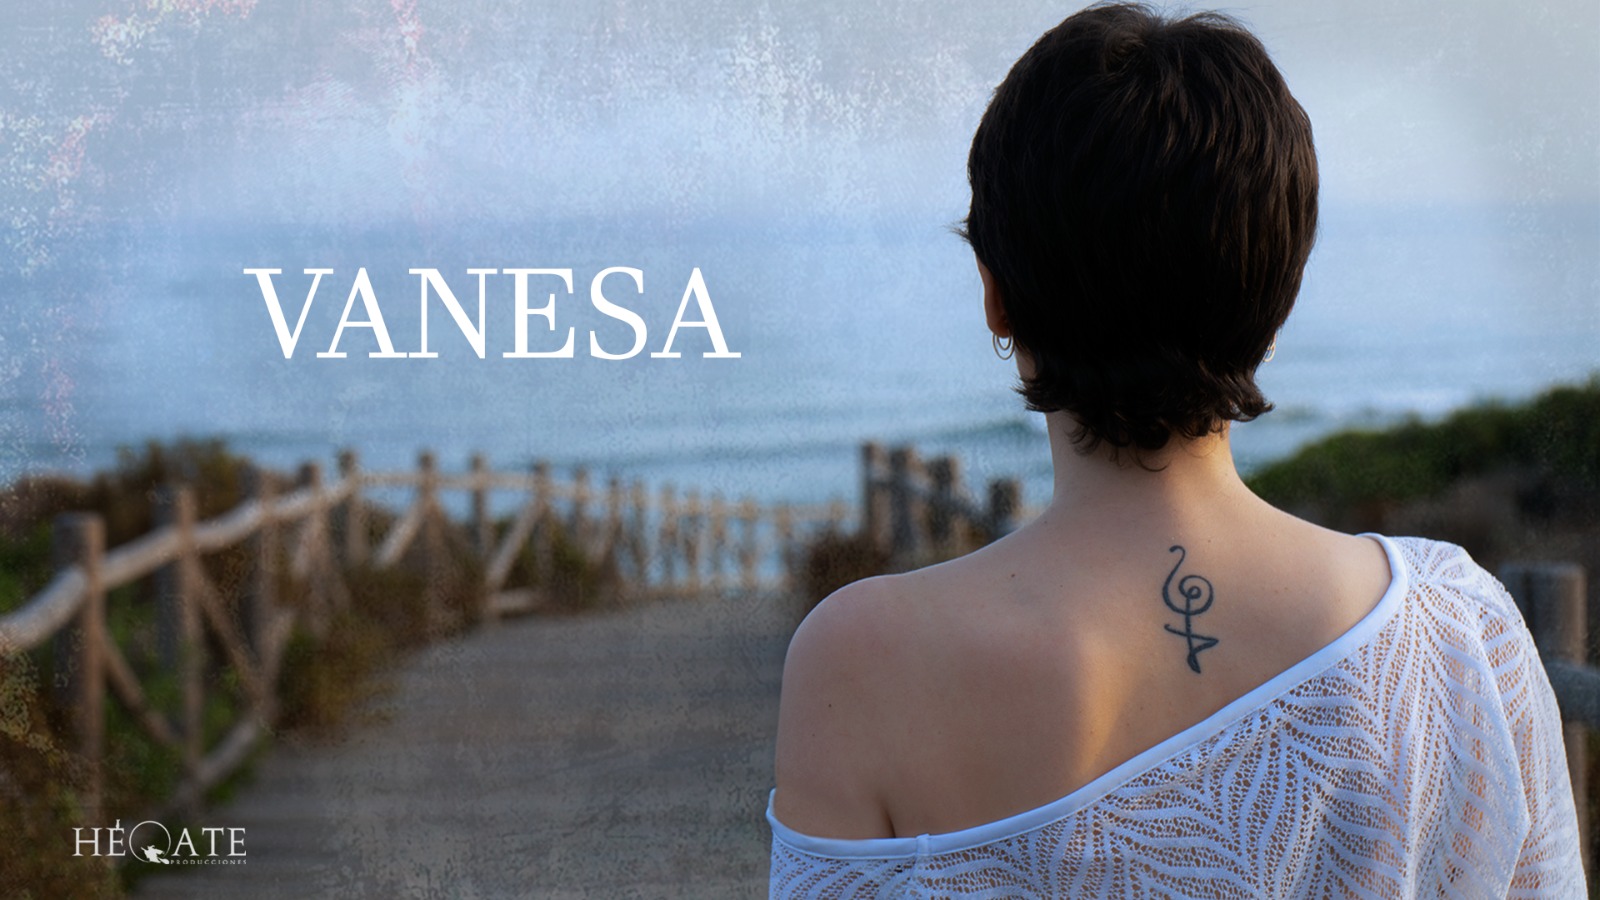 El documental Vanesa disponible en YouTube